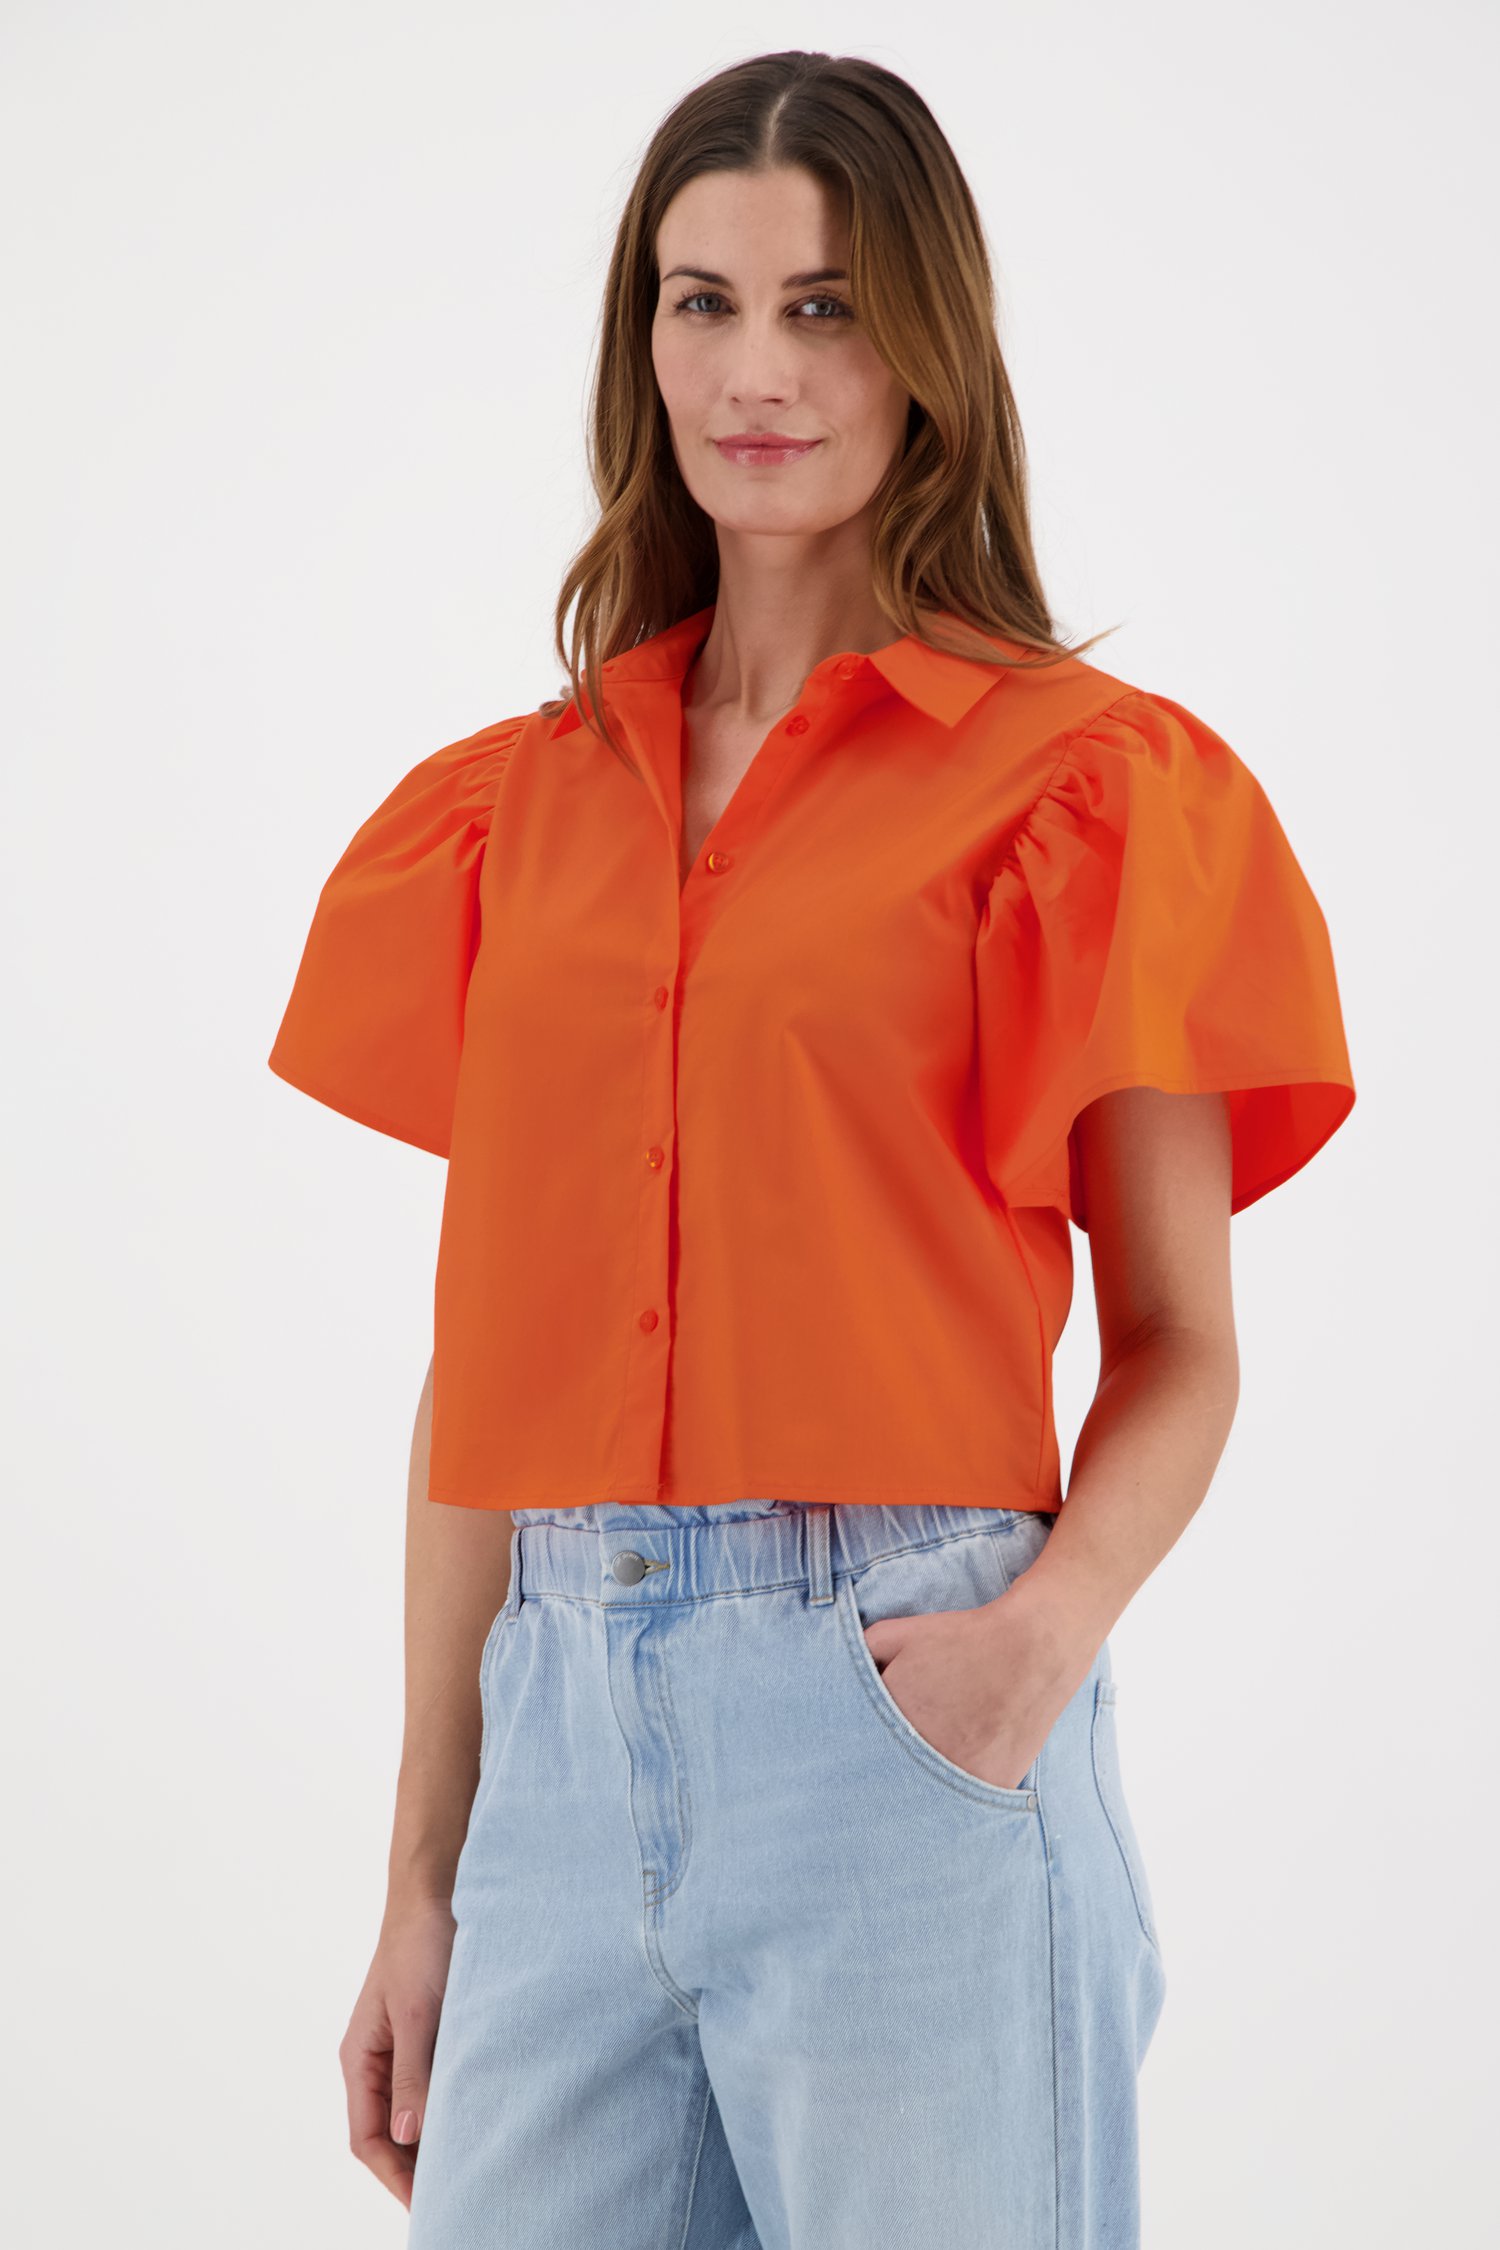 Voorspeller heilig Nuchter Oranje blouse met pofmouwen van JDY | 9840042 | e5